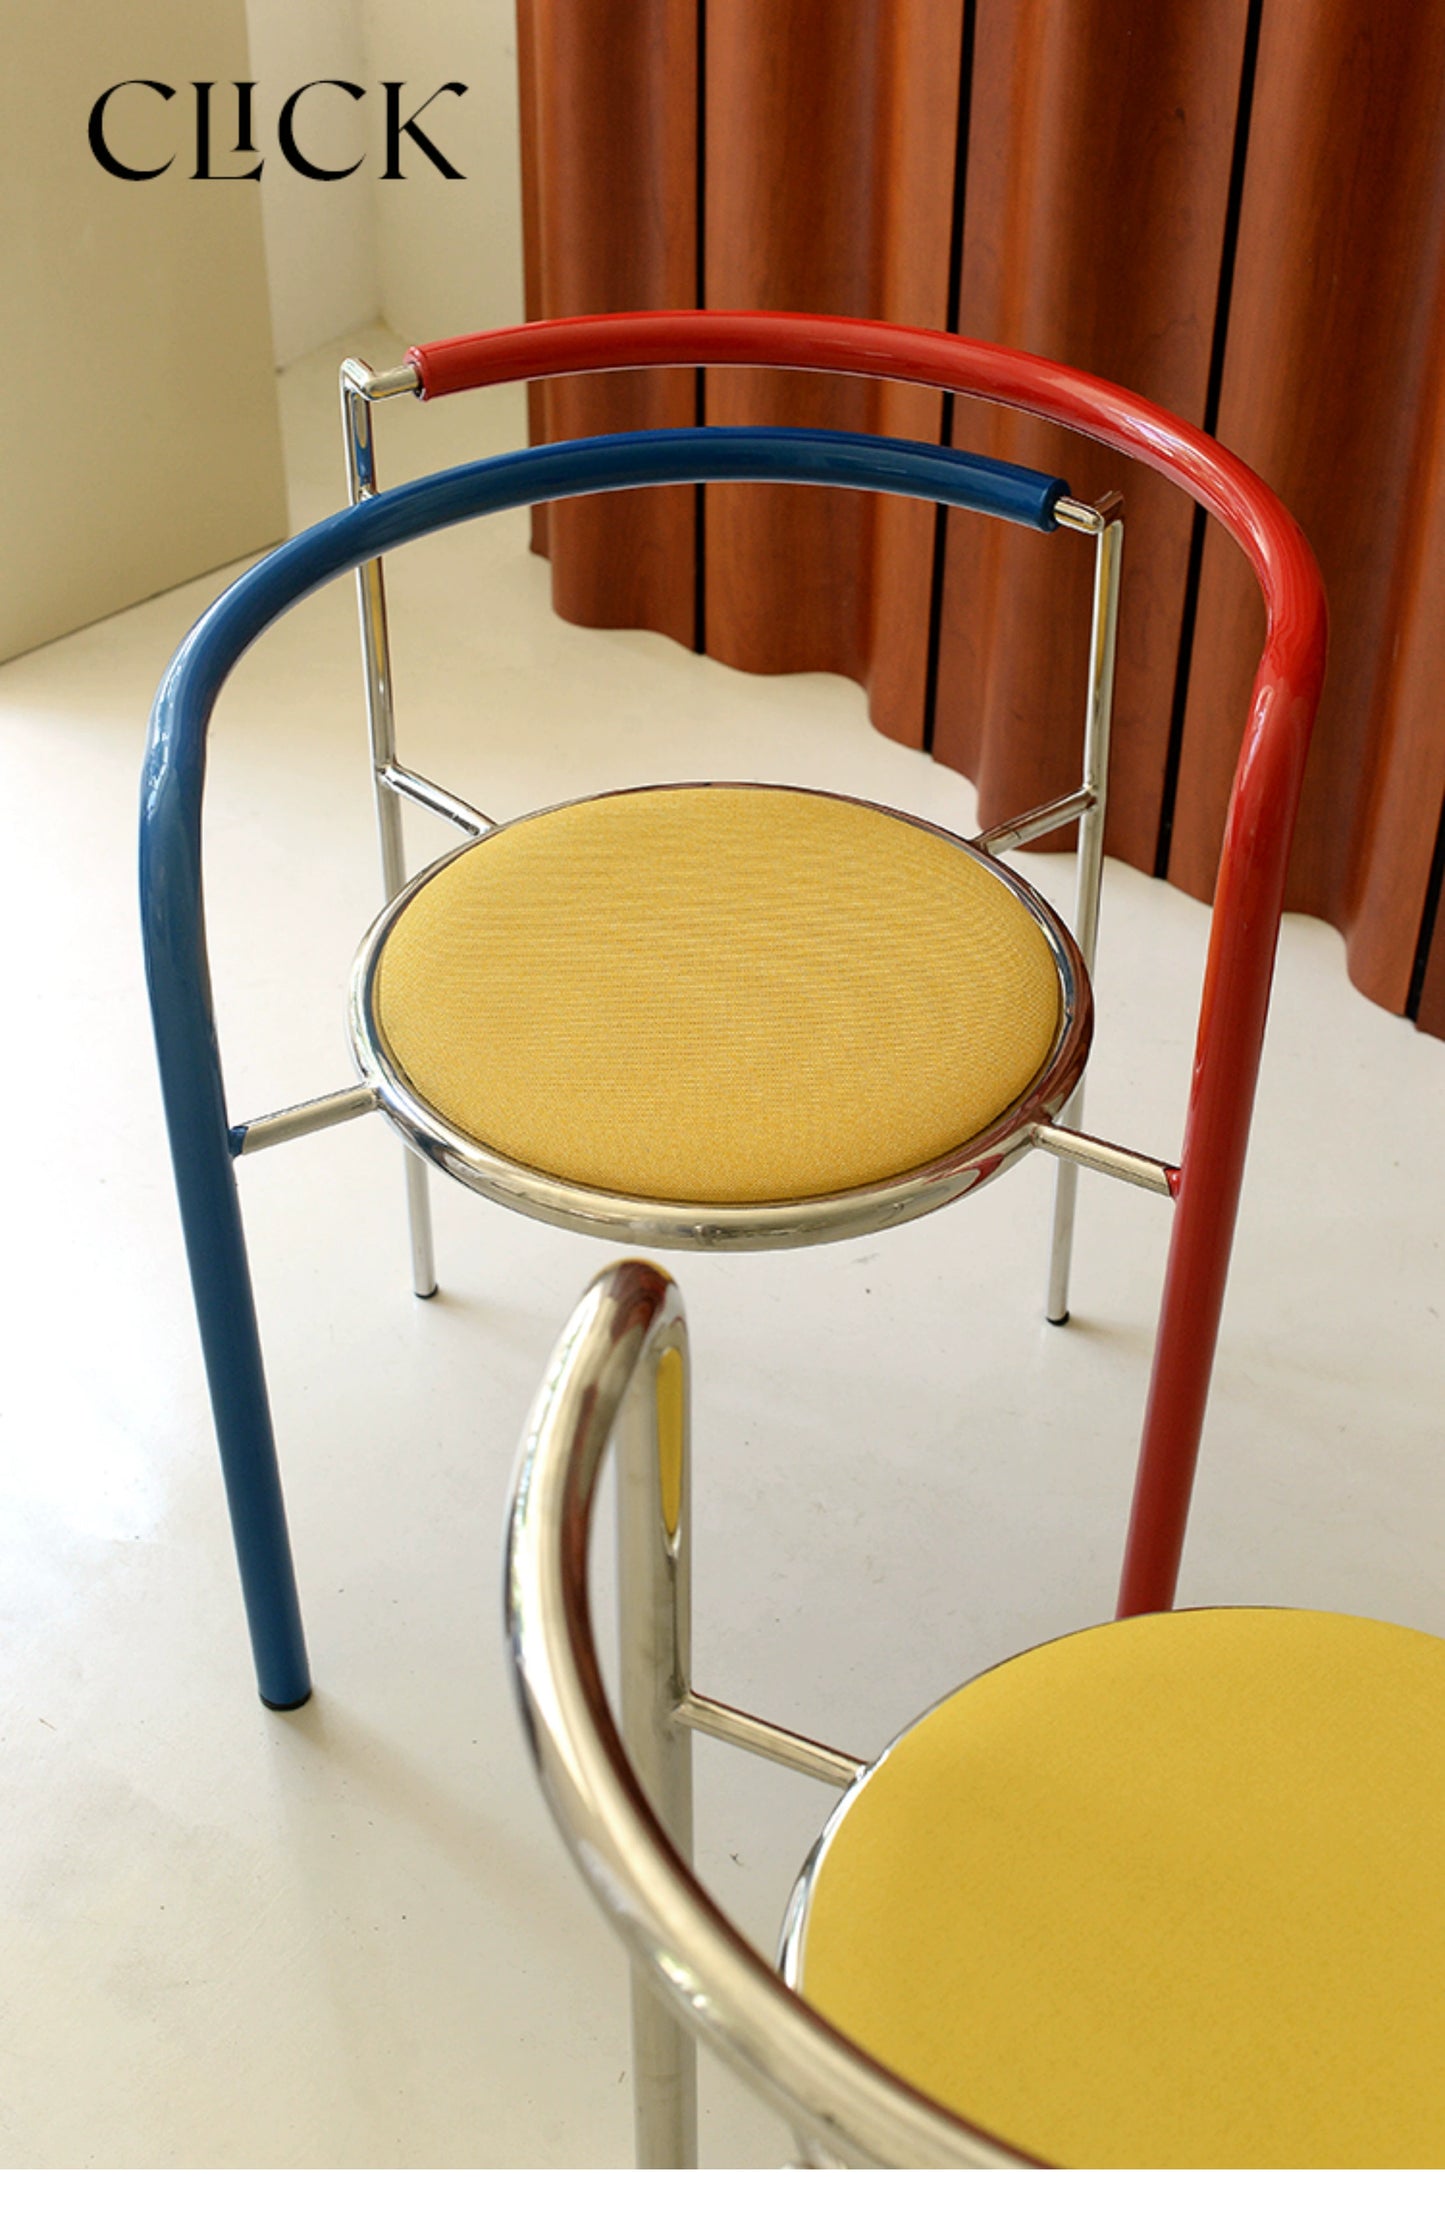 Colourful Pop Art Chair